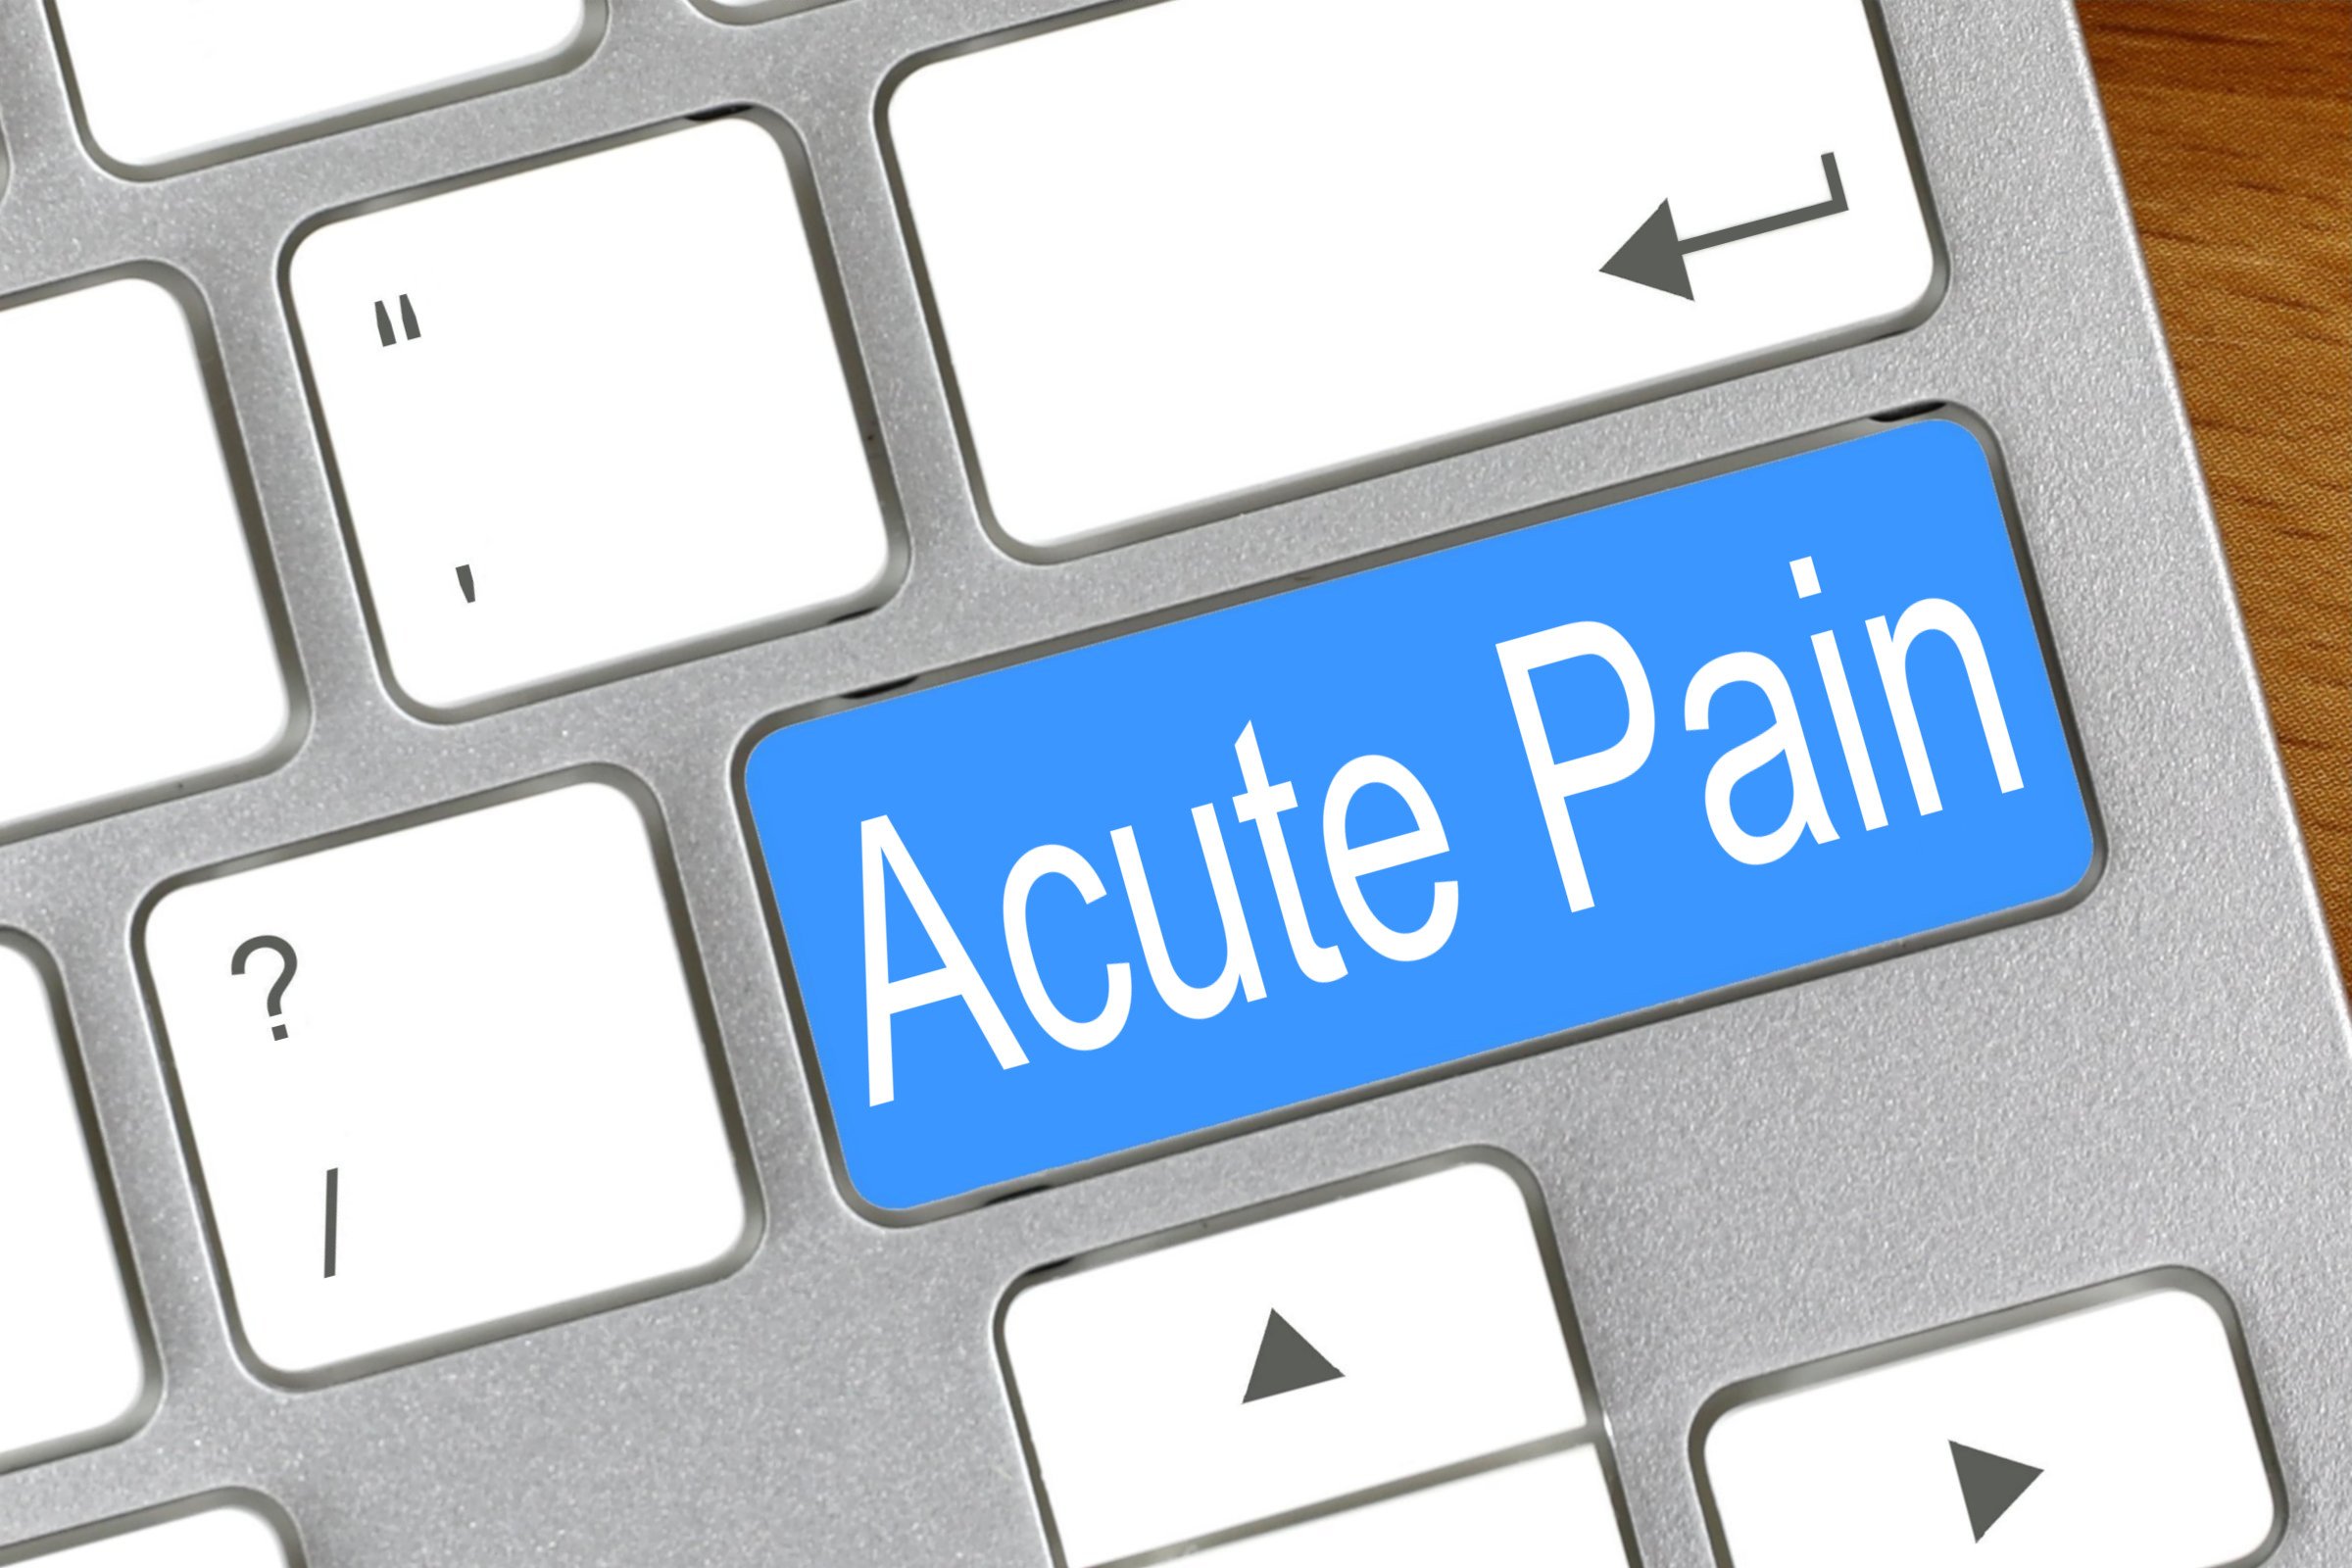 acute pain